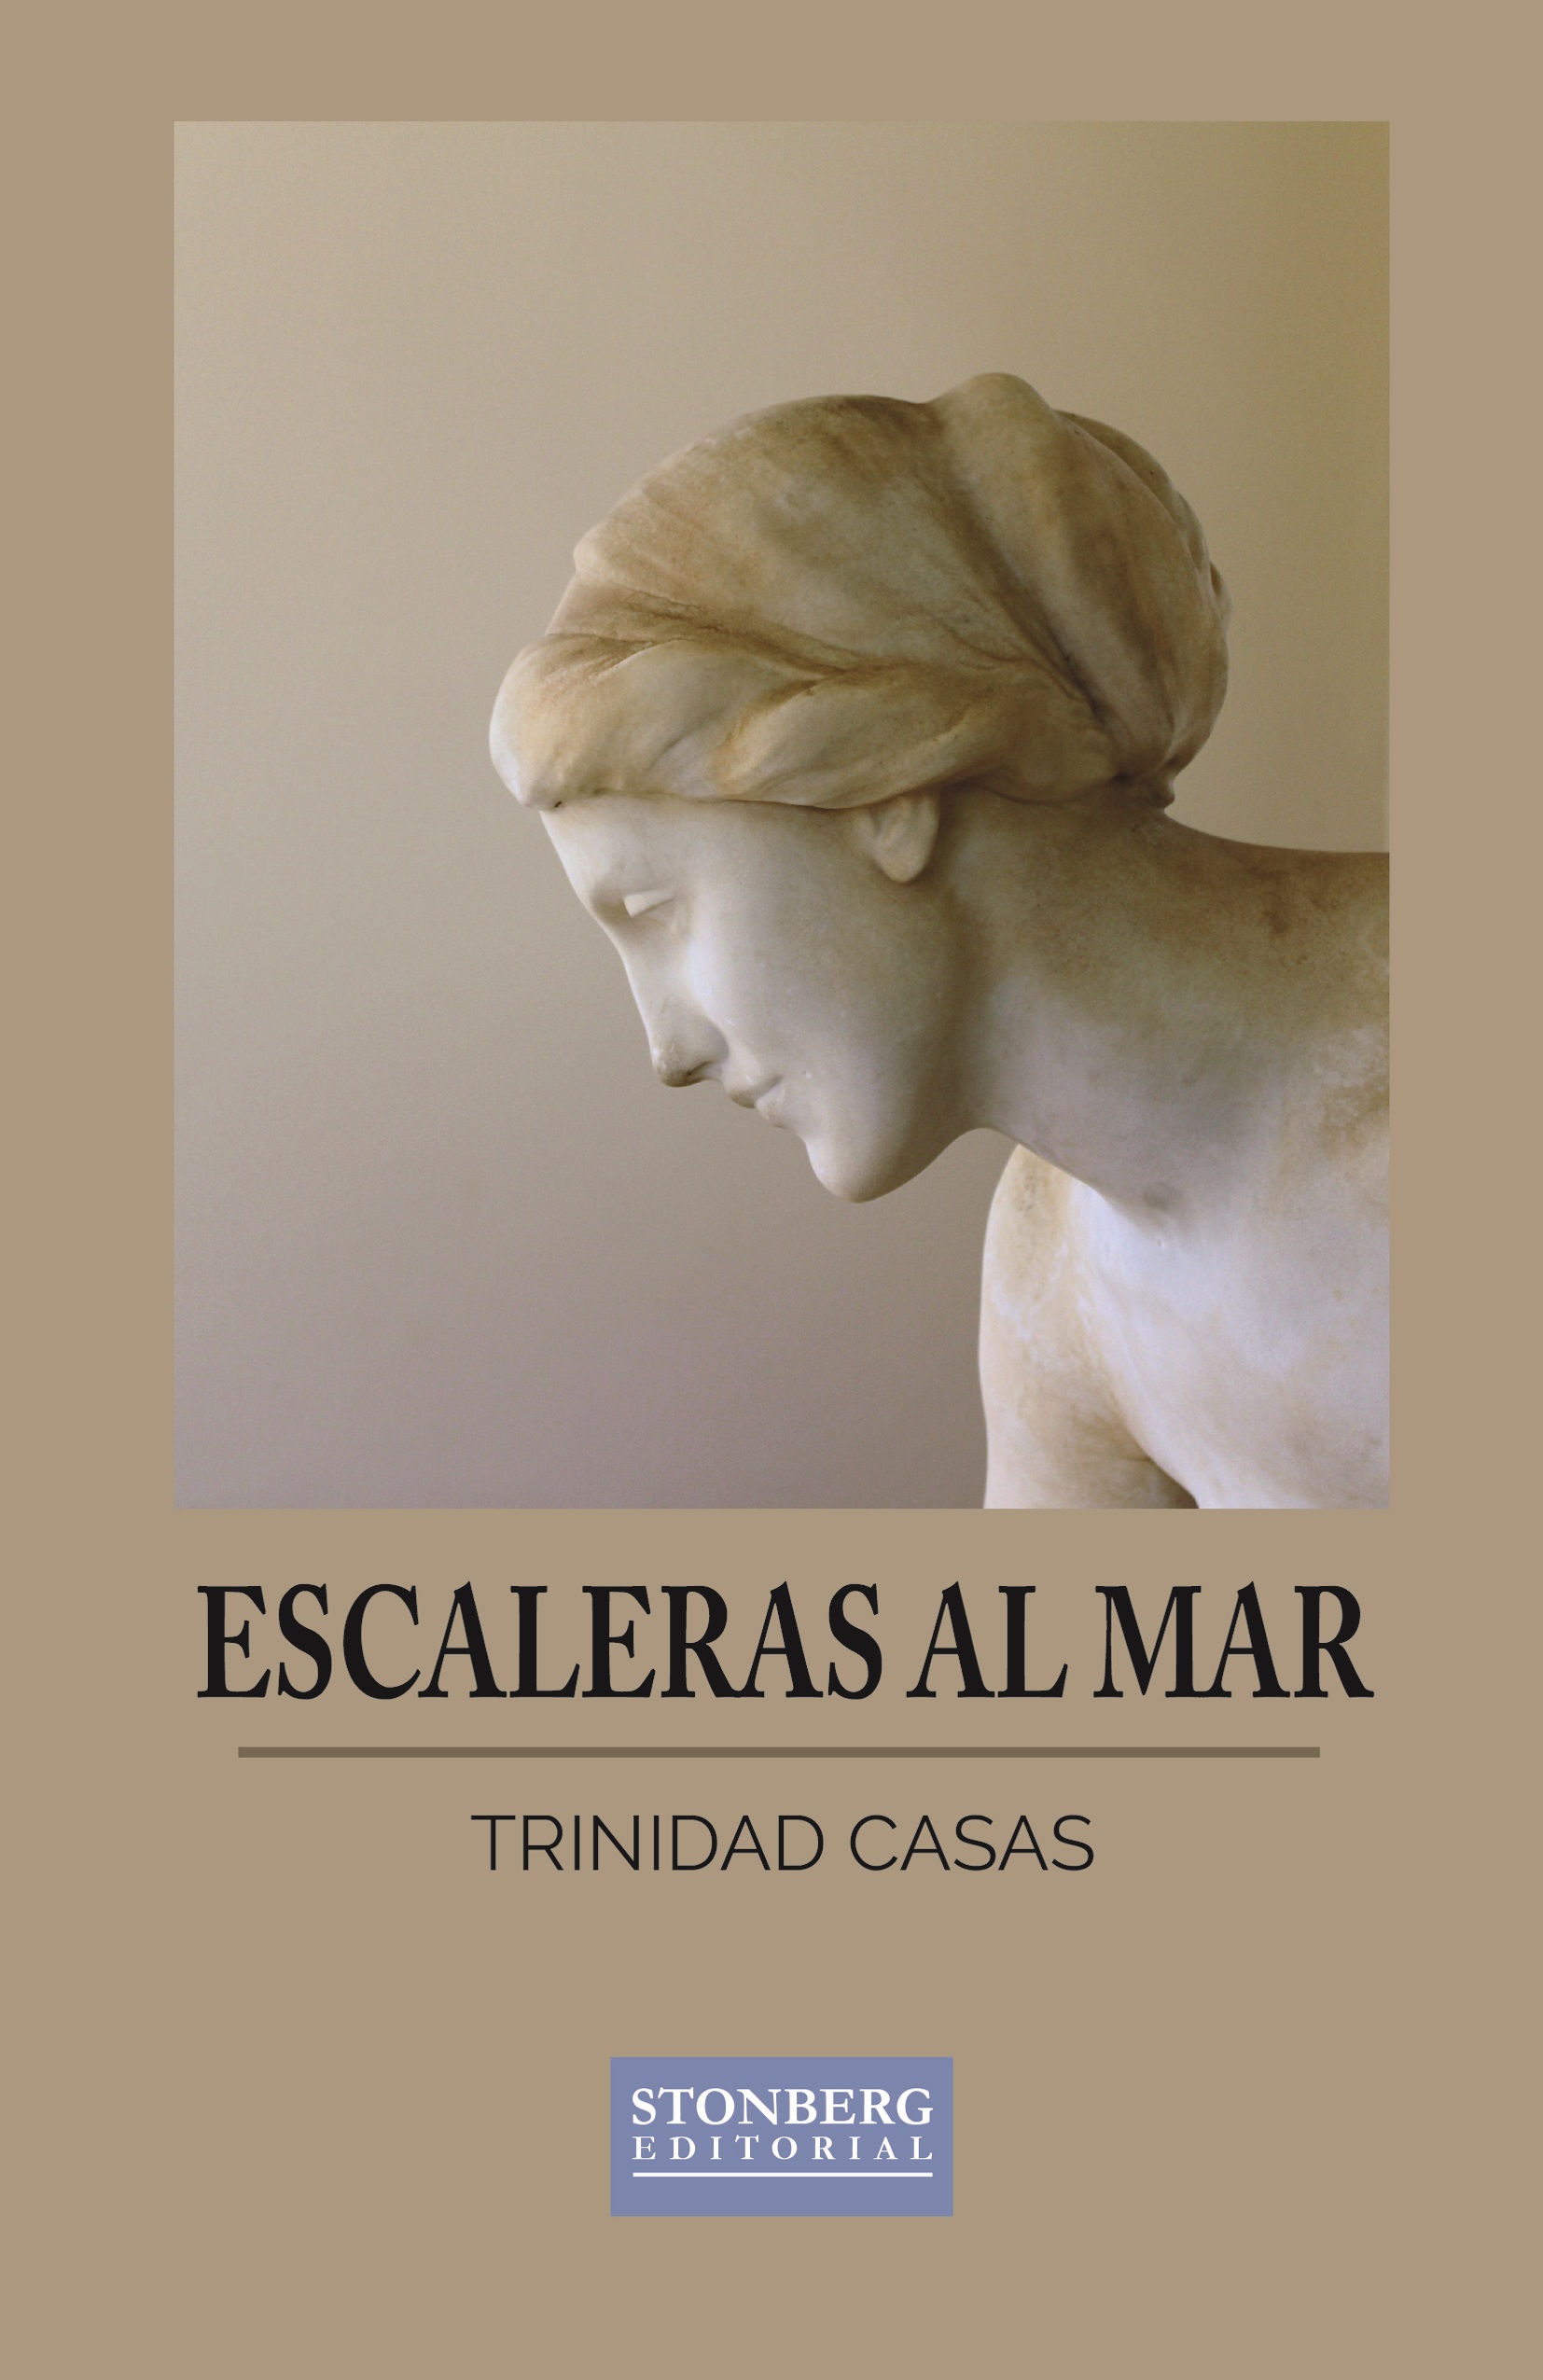 Portada del poemario de Trinidad Casas, «Escaleras al mar»